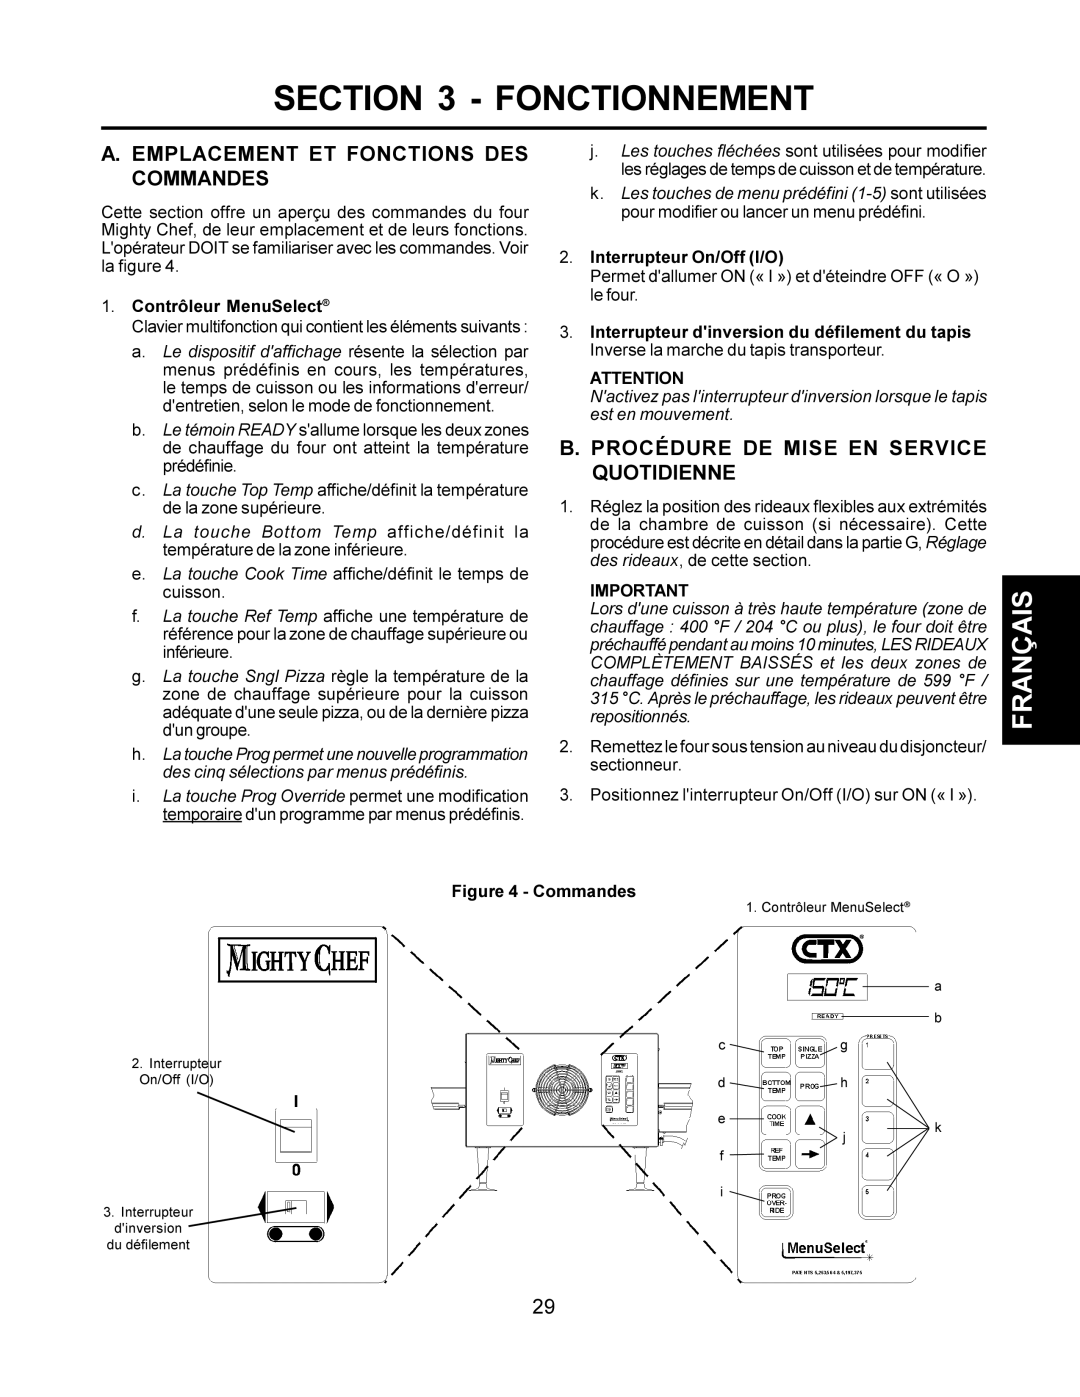 CTX TCO21140077 manual Fonctionnement, Emplacement ET Fonctions DES Commandes, Procédure DE Mise EN Service Quotidienne 